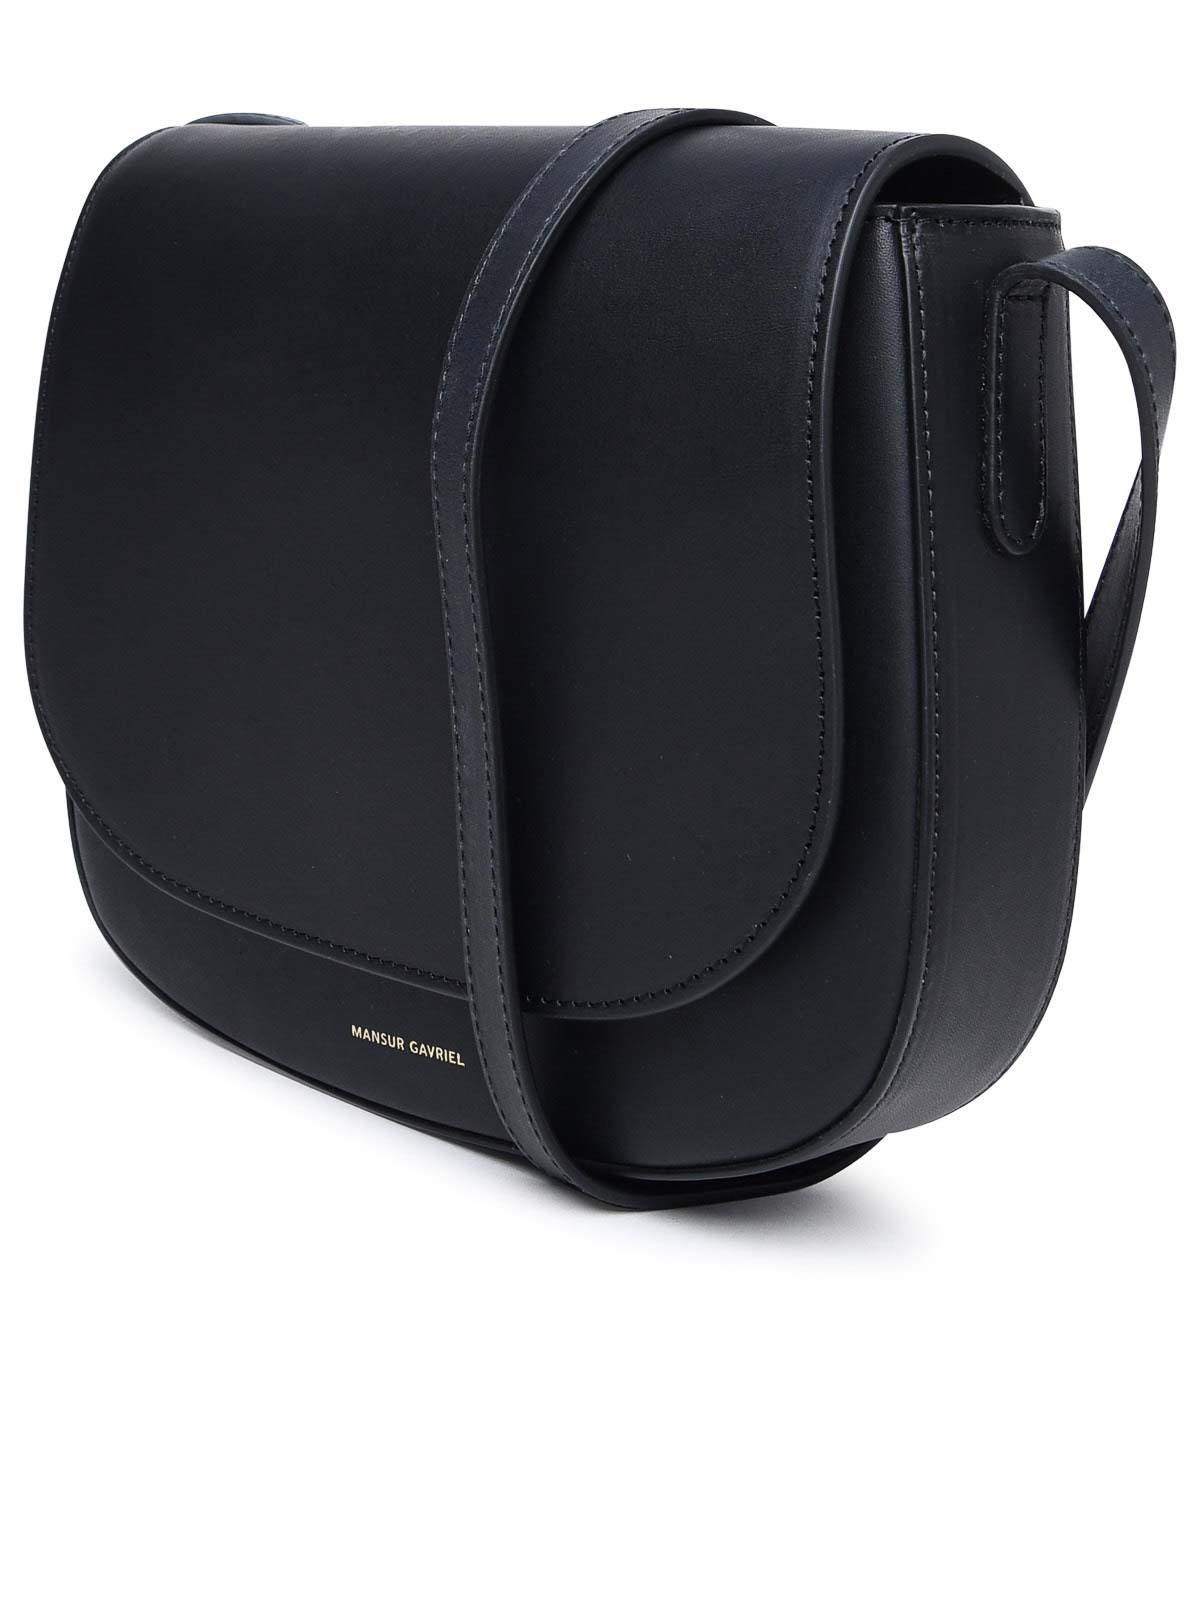 Shop Mansur Gavriel Mini Bag In Black Vegetable Tanned Leather